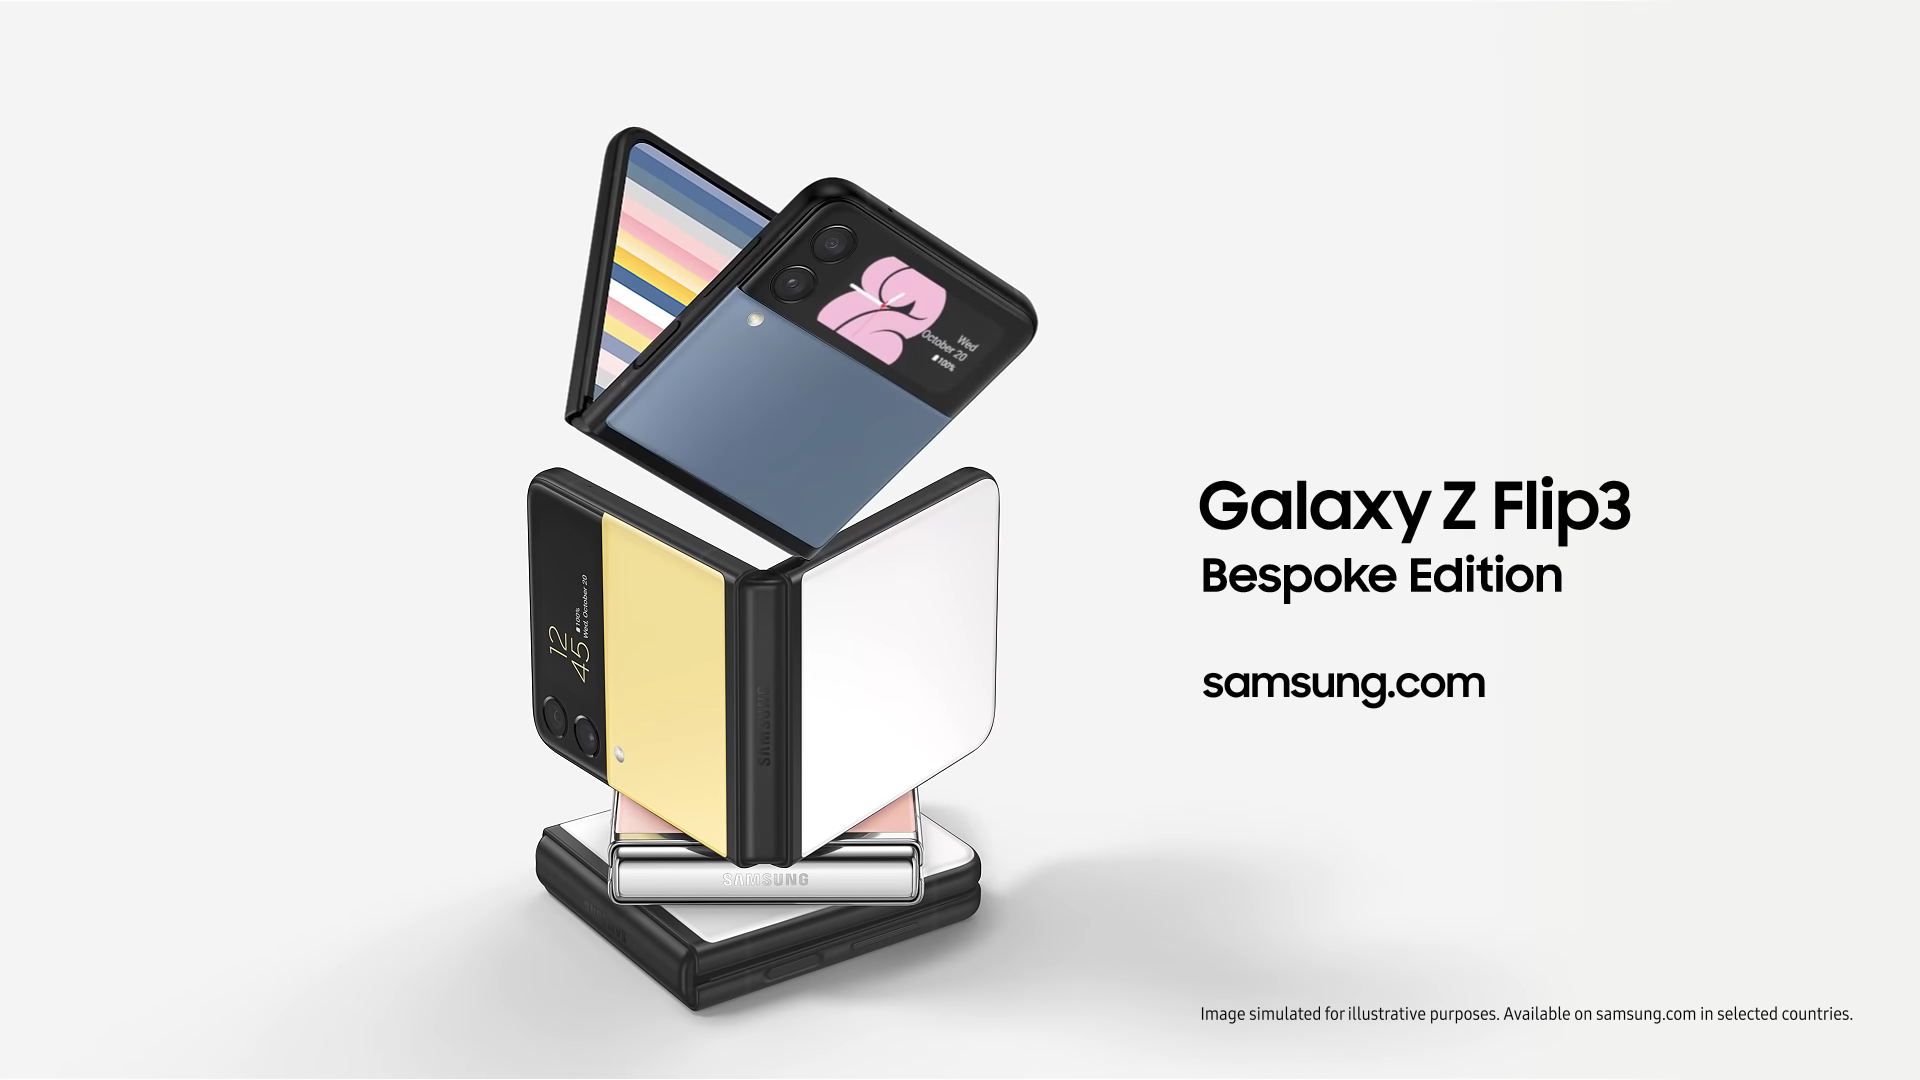 Annunciato il Samsung Galaxy Z Flip 3 Bespoke Edition - colori per tutti i gusti per 50 euro in più